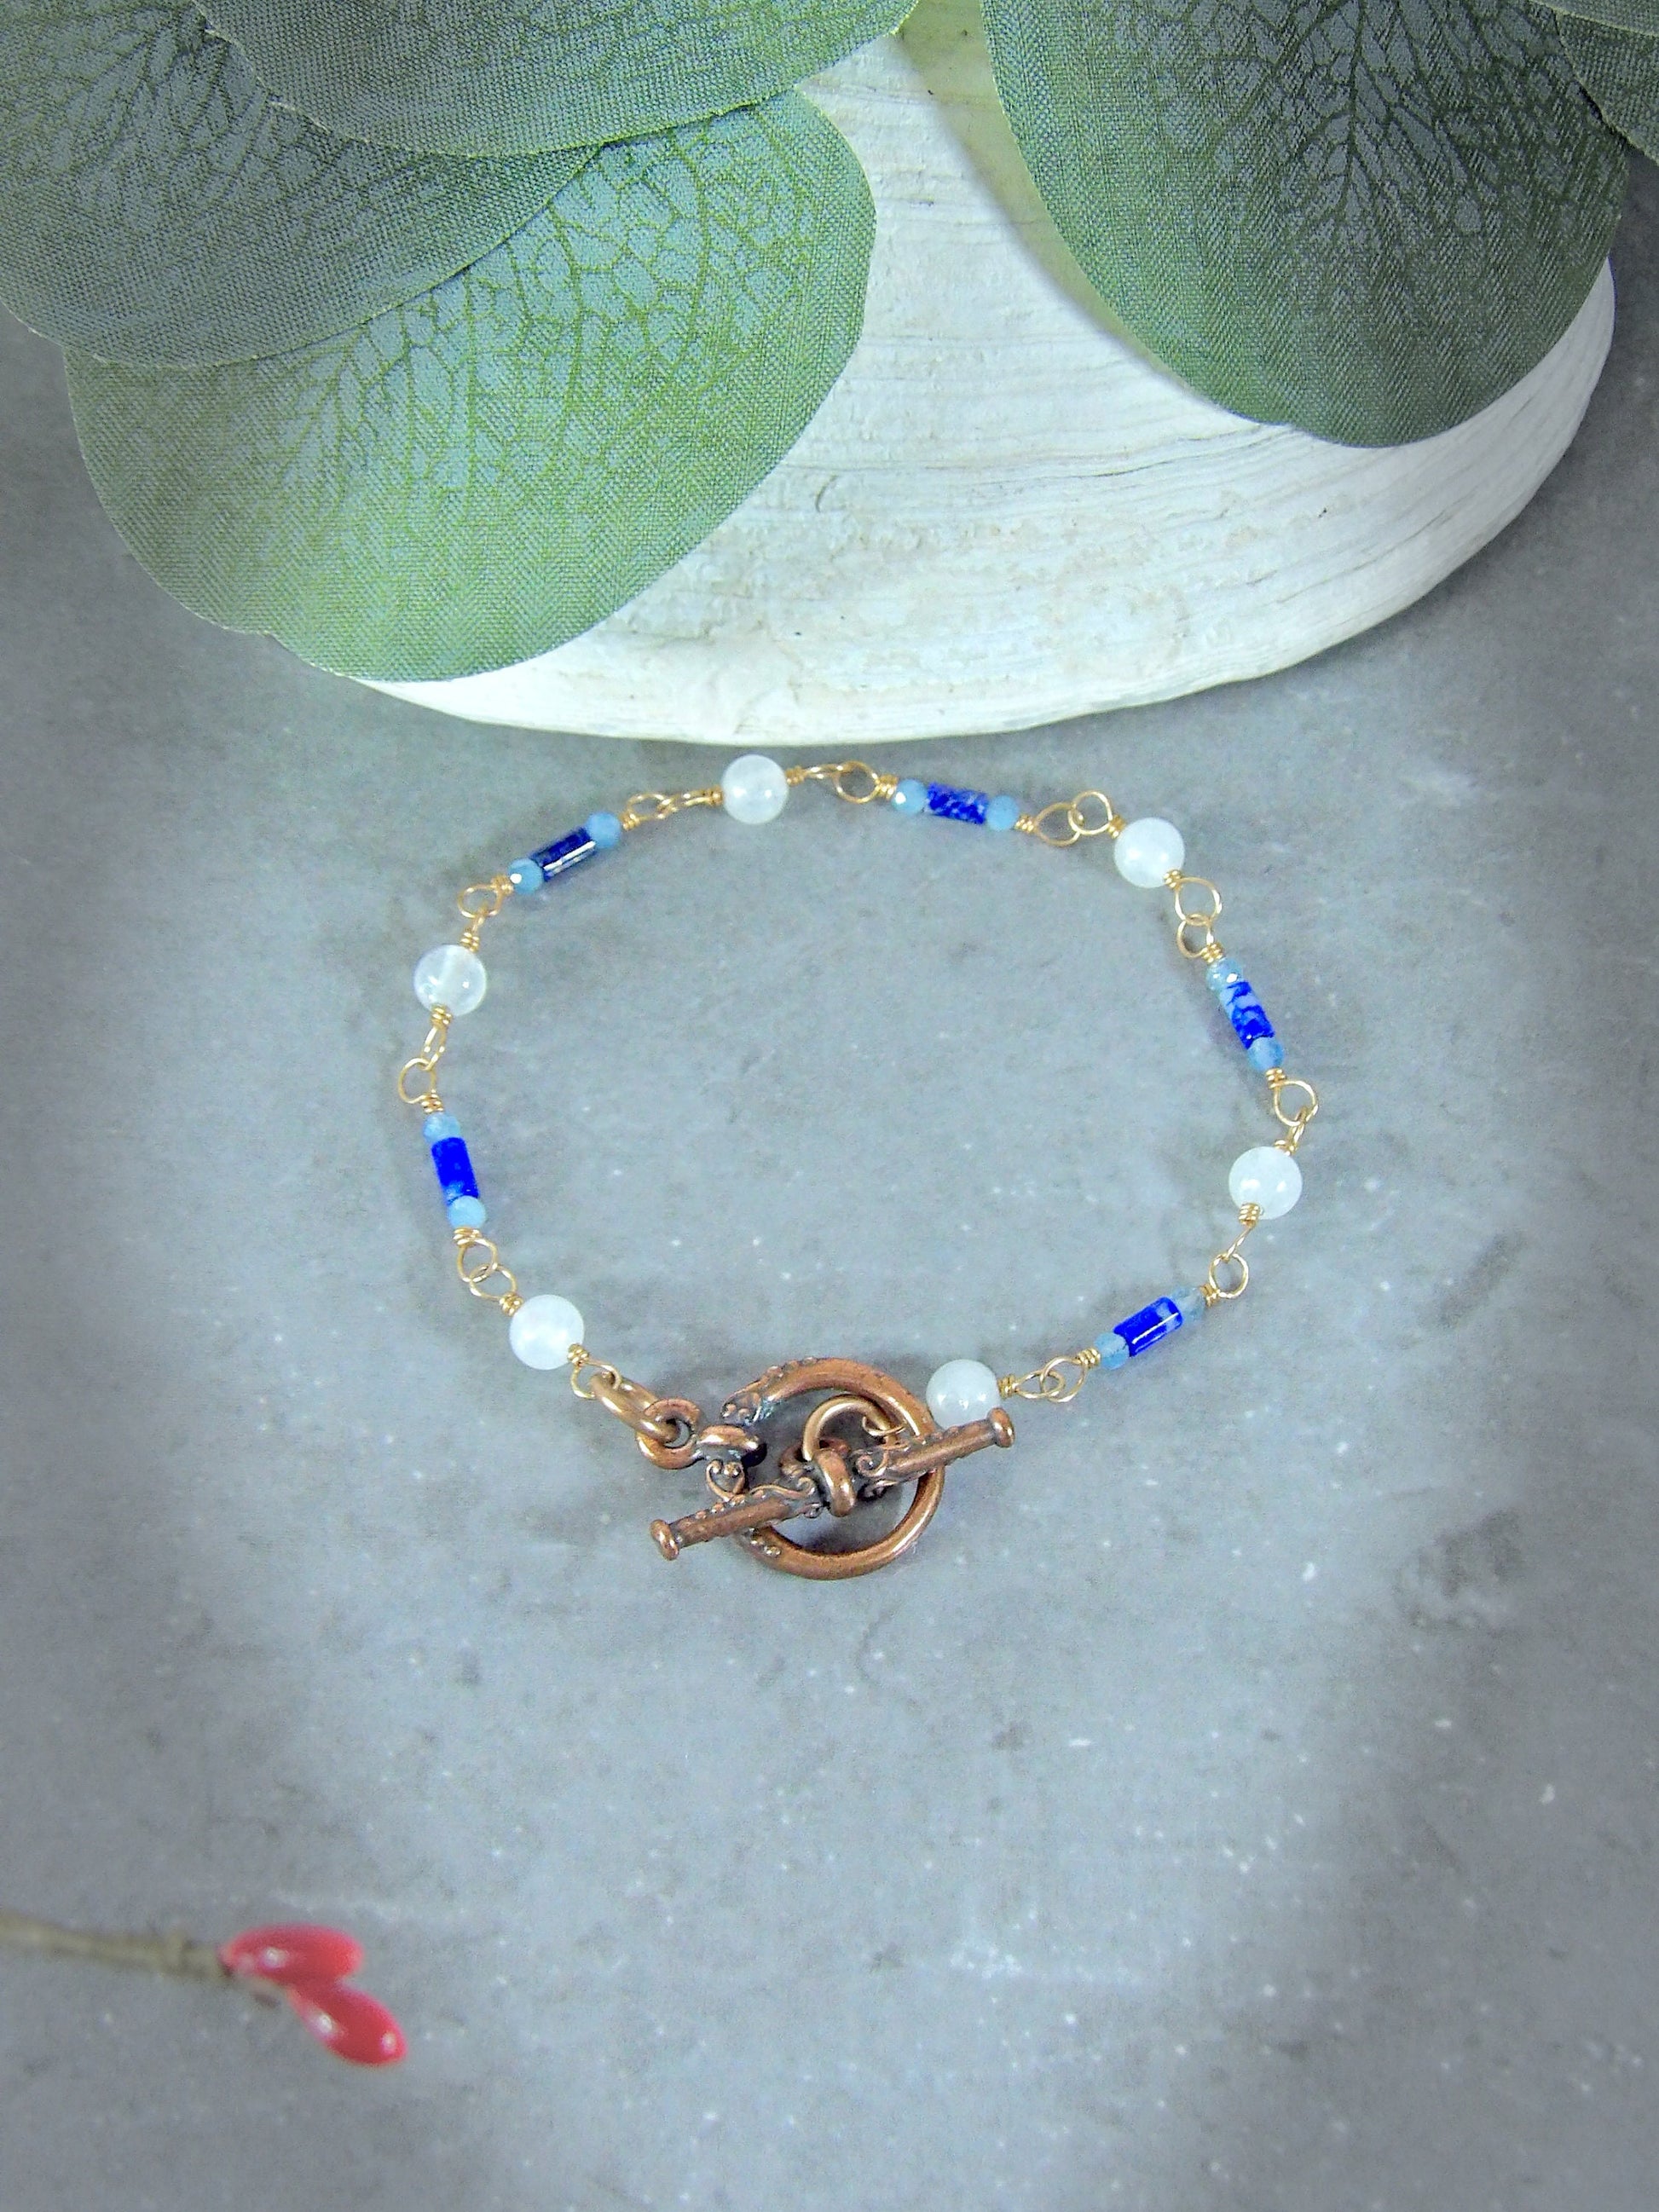 boho white jade aquamarine lapis lazuli bracelet. Toggle clasp bracelet. Beaded boho bracelet. Gemstone bracelet